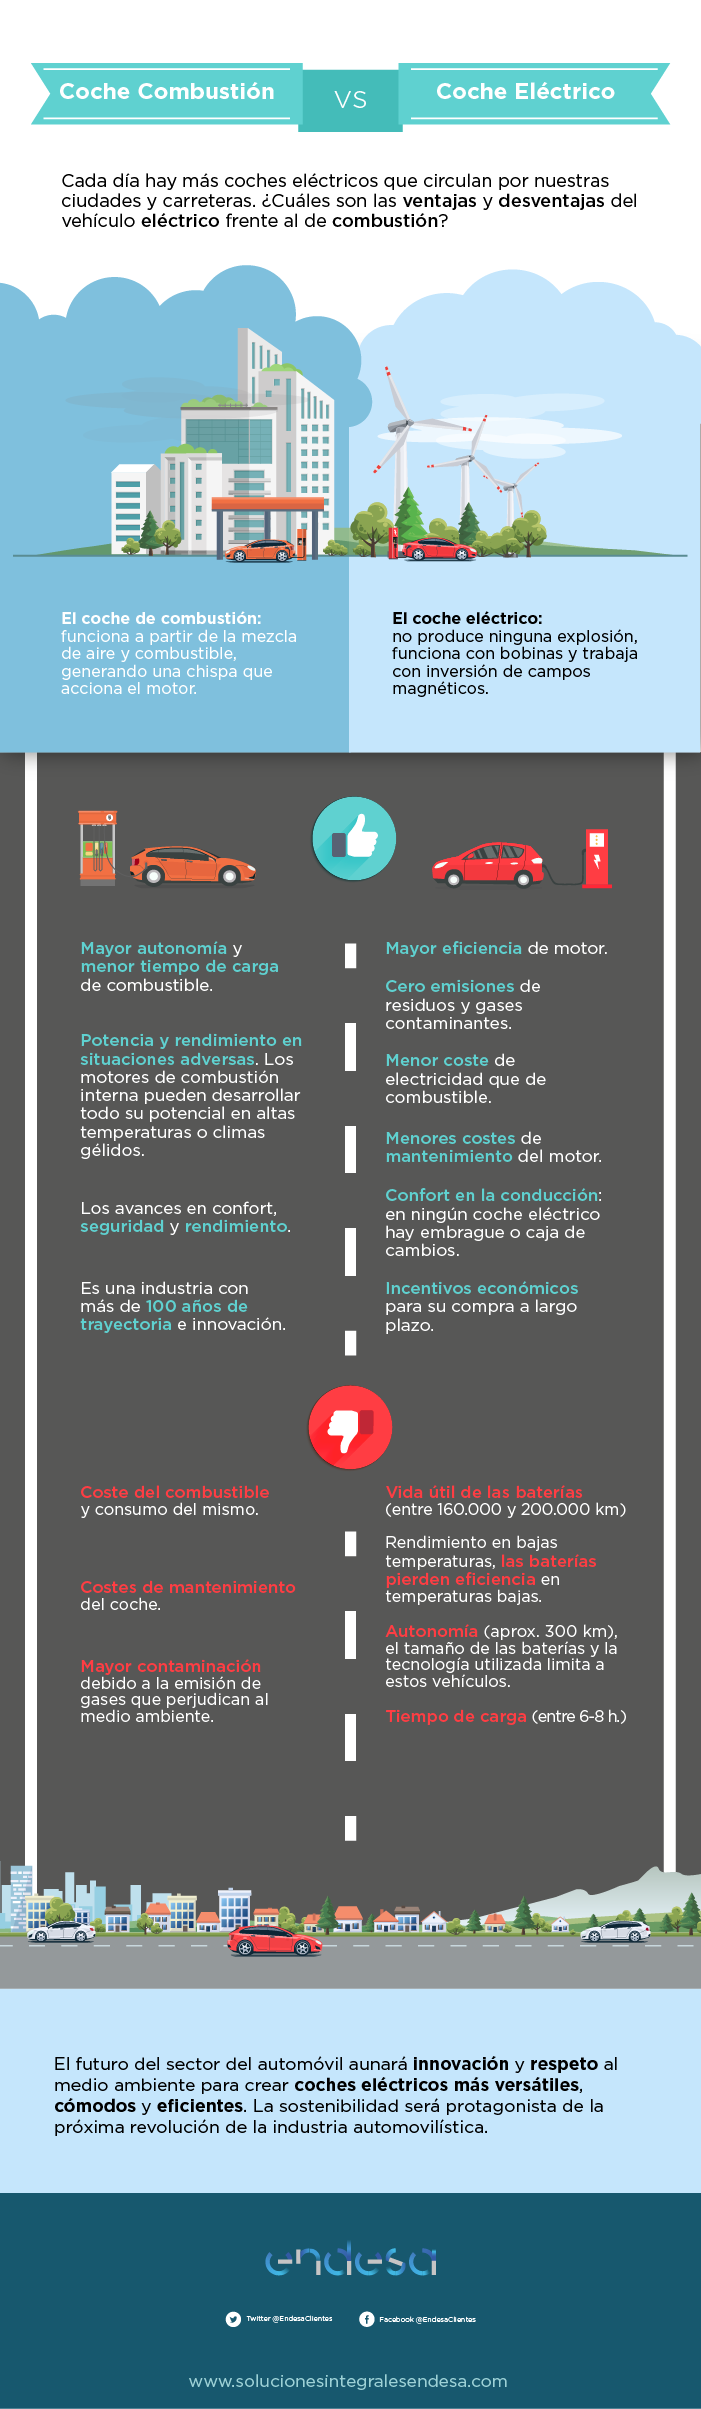 infografia-coche-electrico